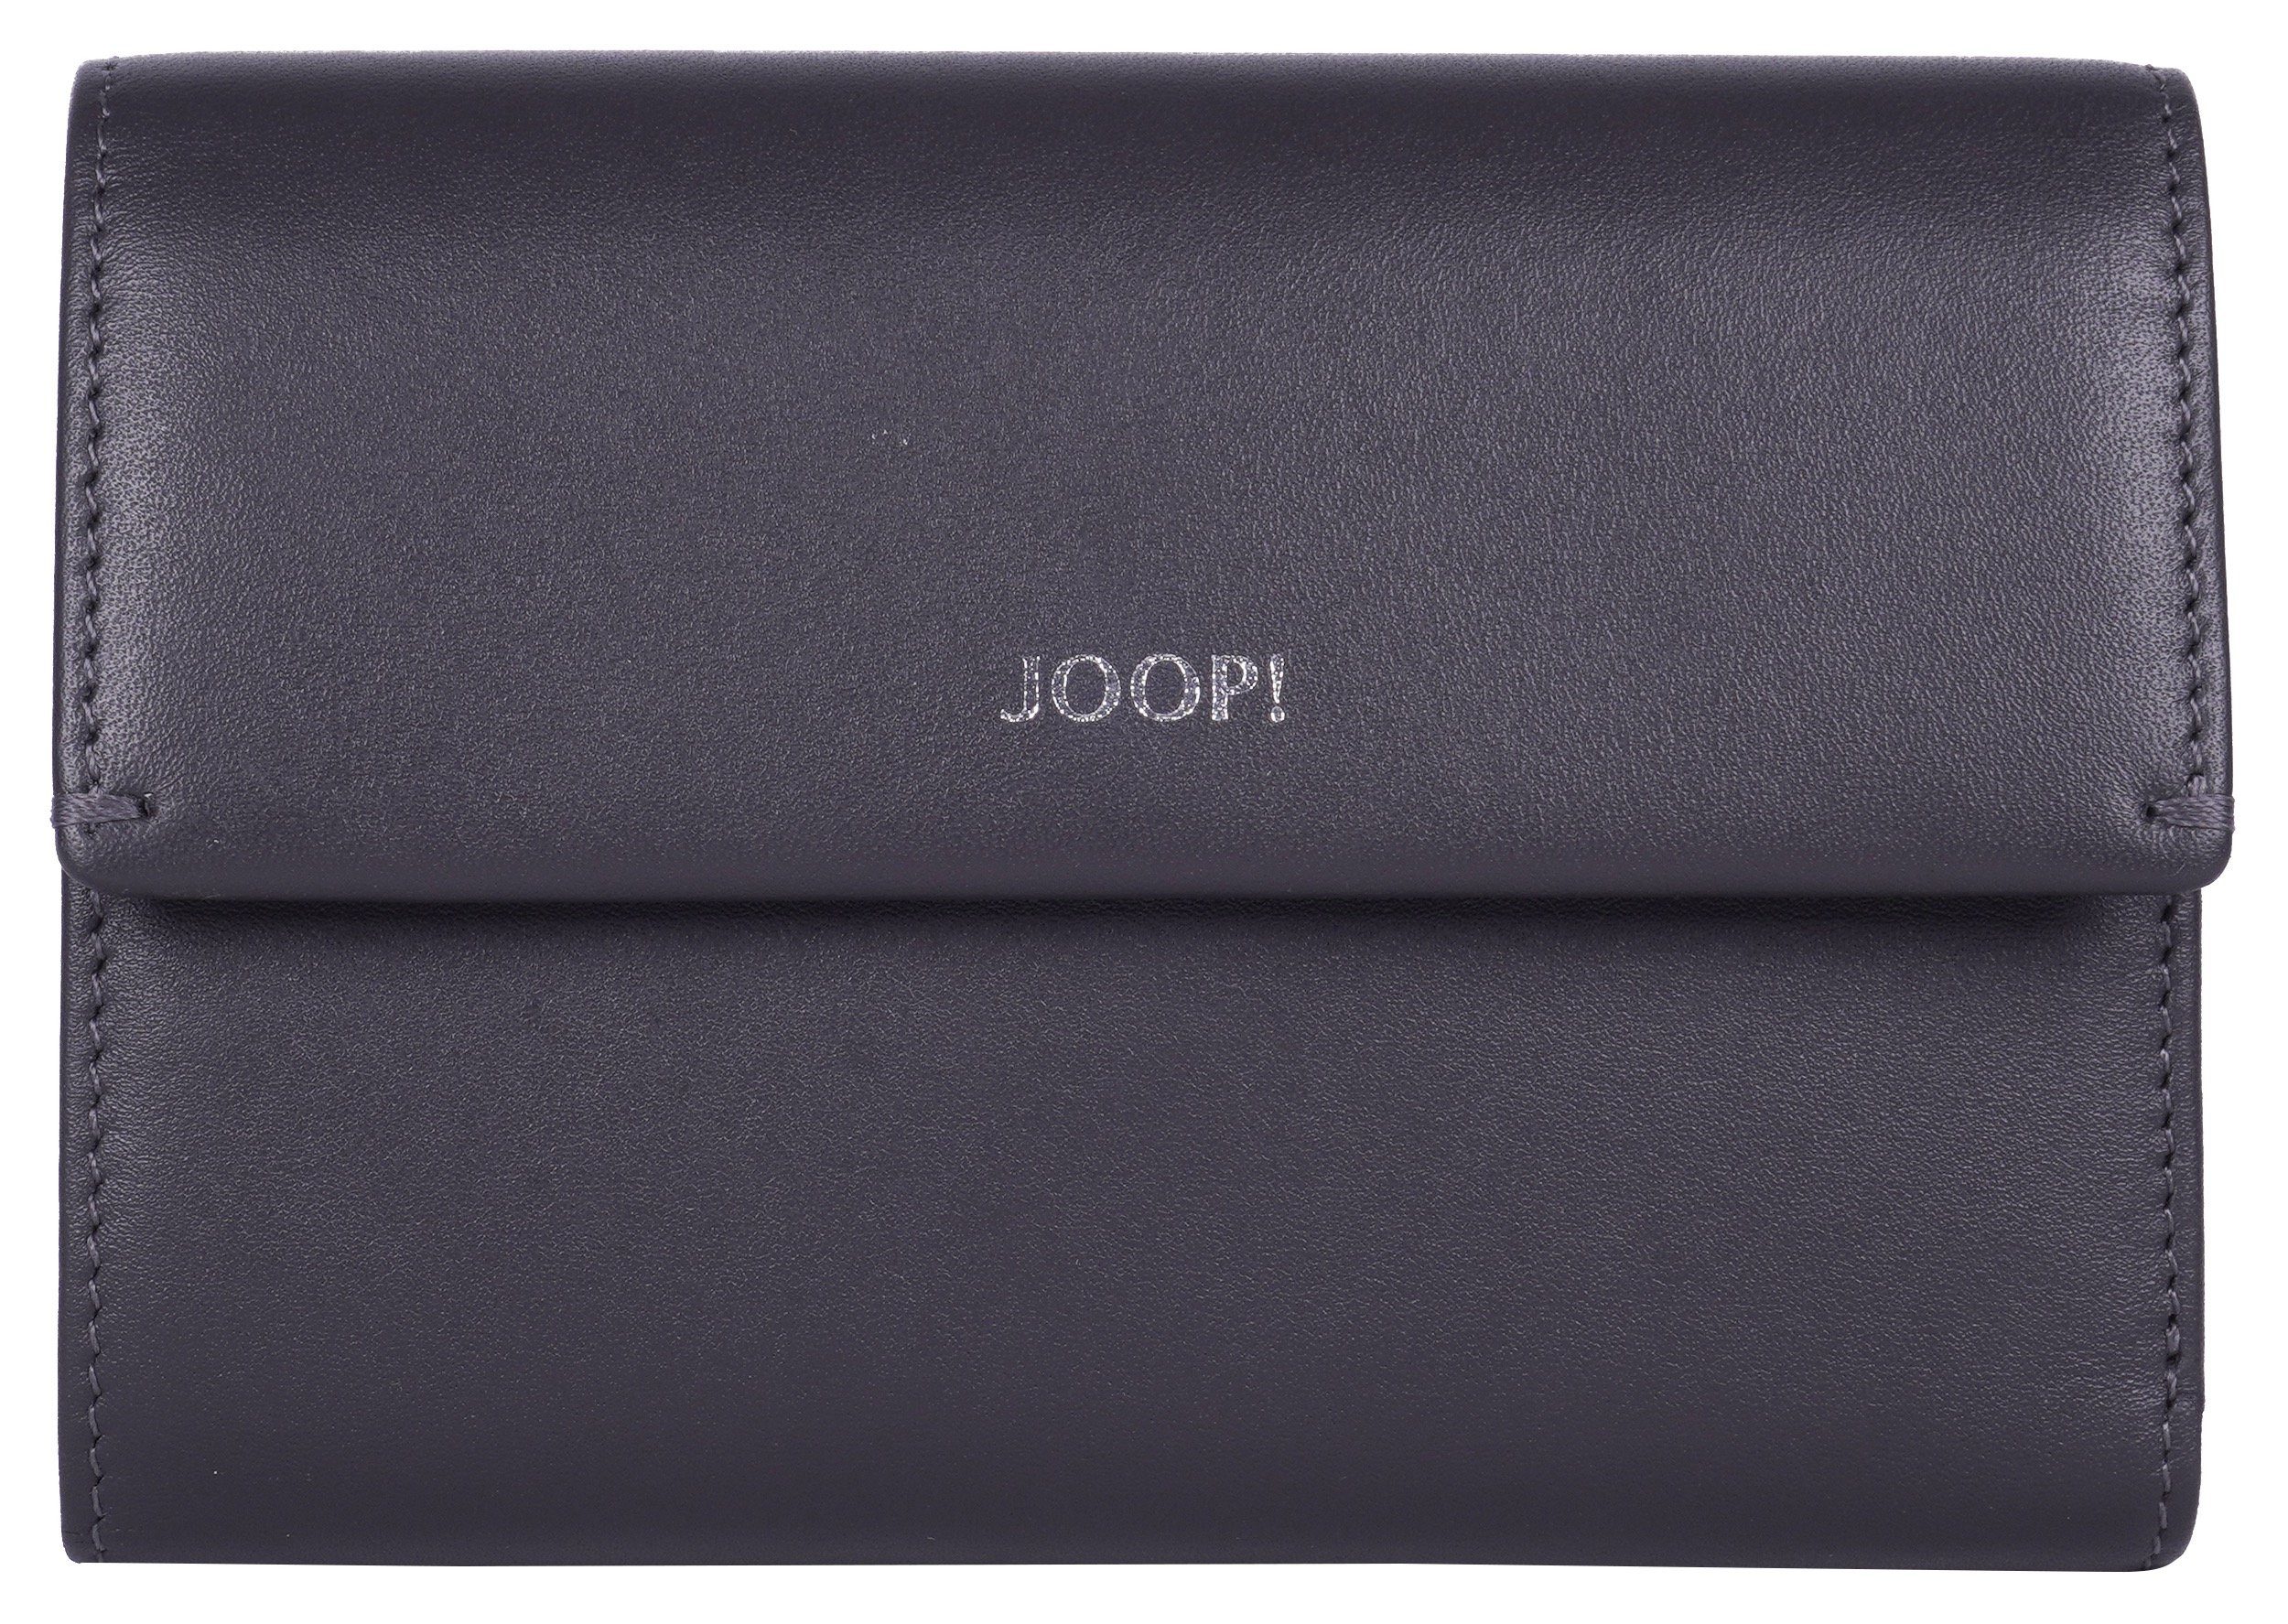 Joop! Geldbörse sofisticato 1.0 cosma purse mh10f, in schlichtem Design mittelgrau | Geldbörsen